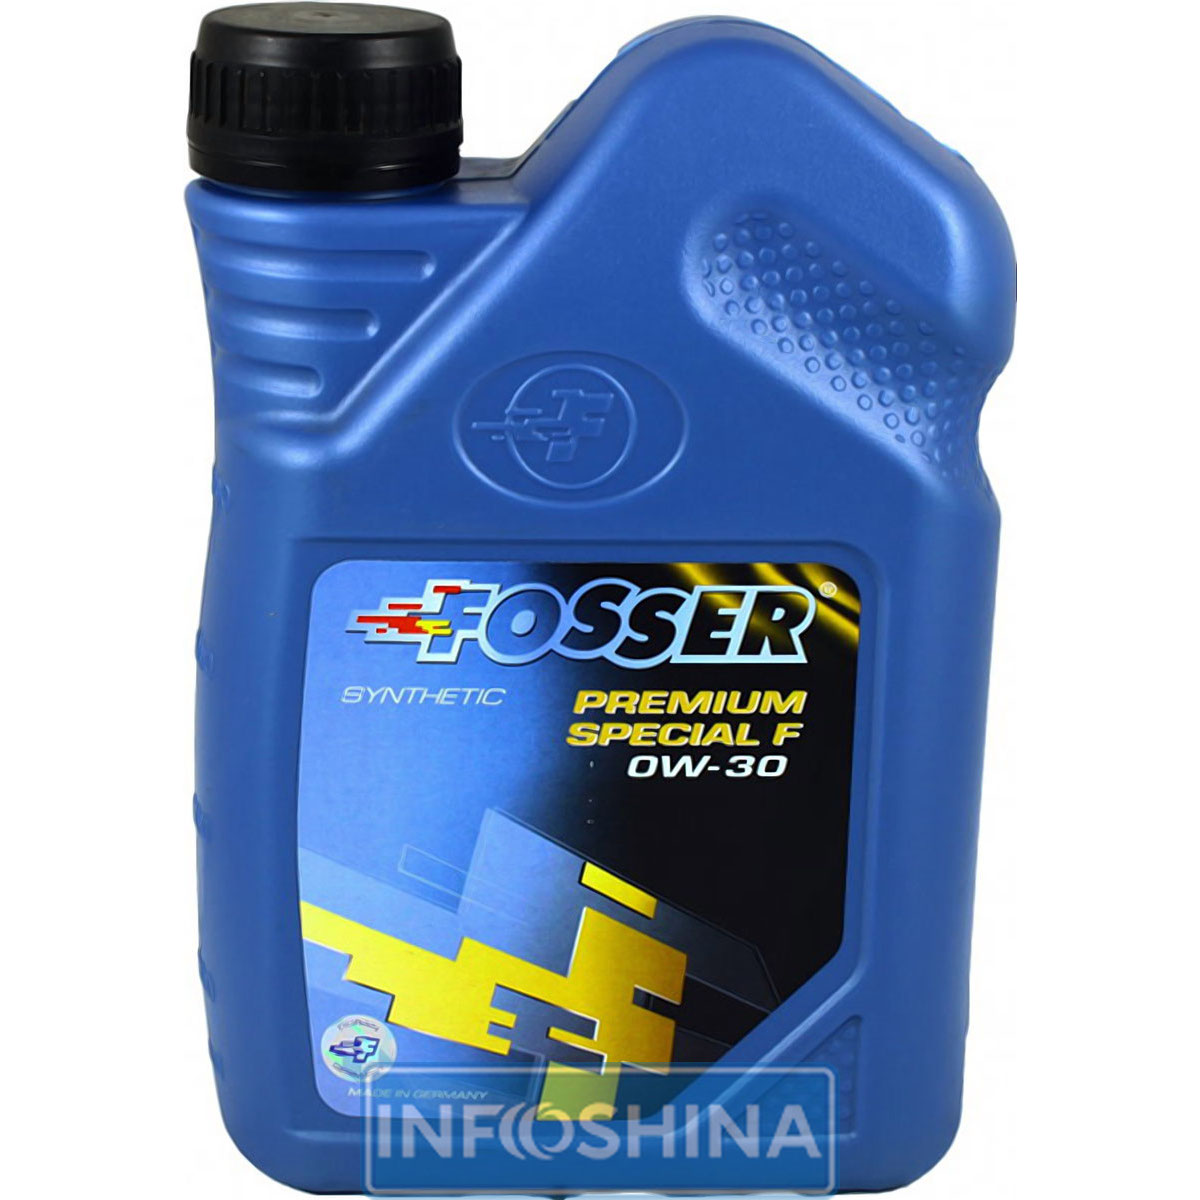 Купить масло Fosser Premium Special F 0W-30 (1л)